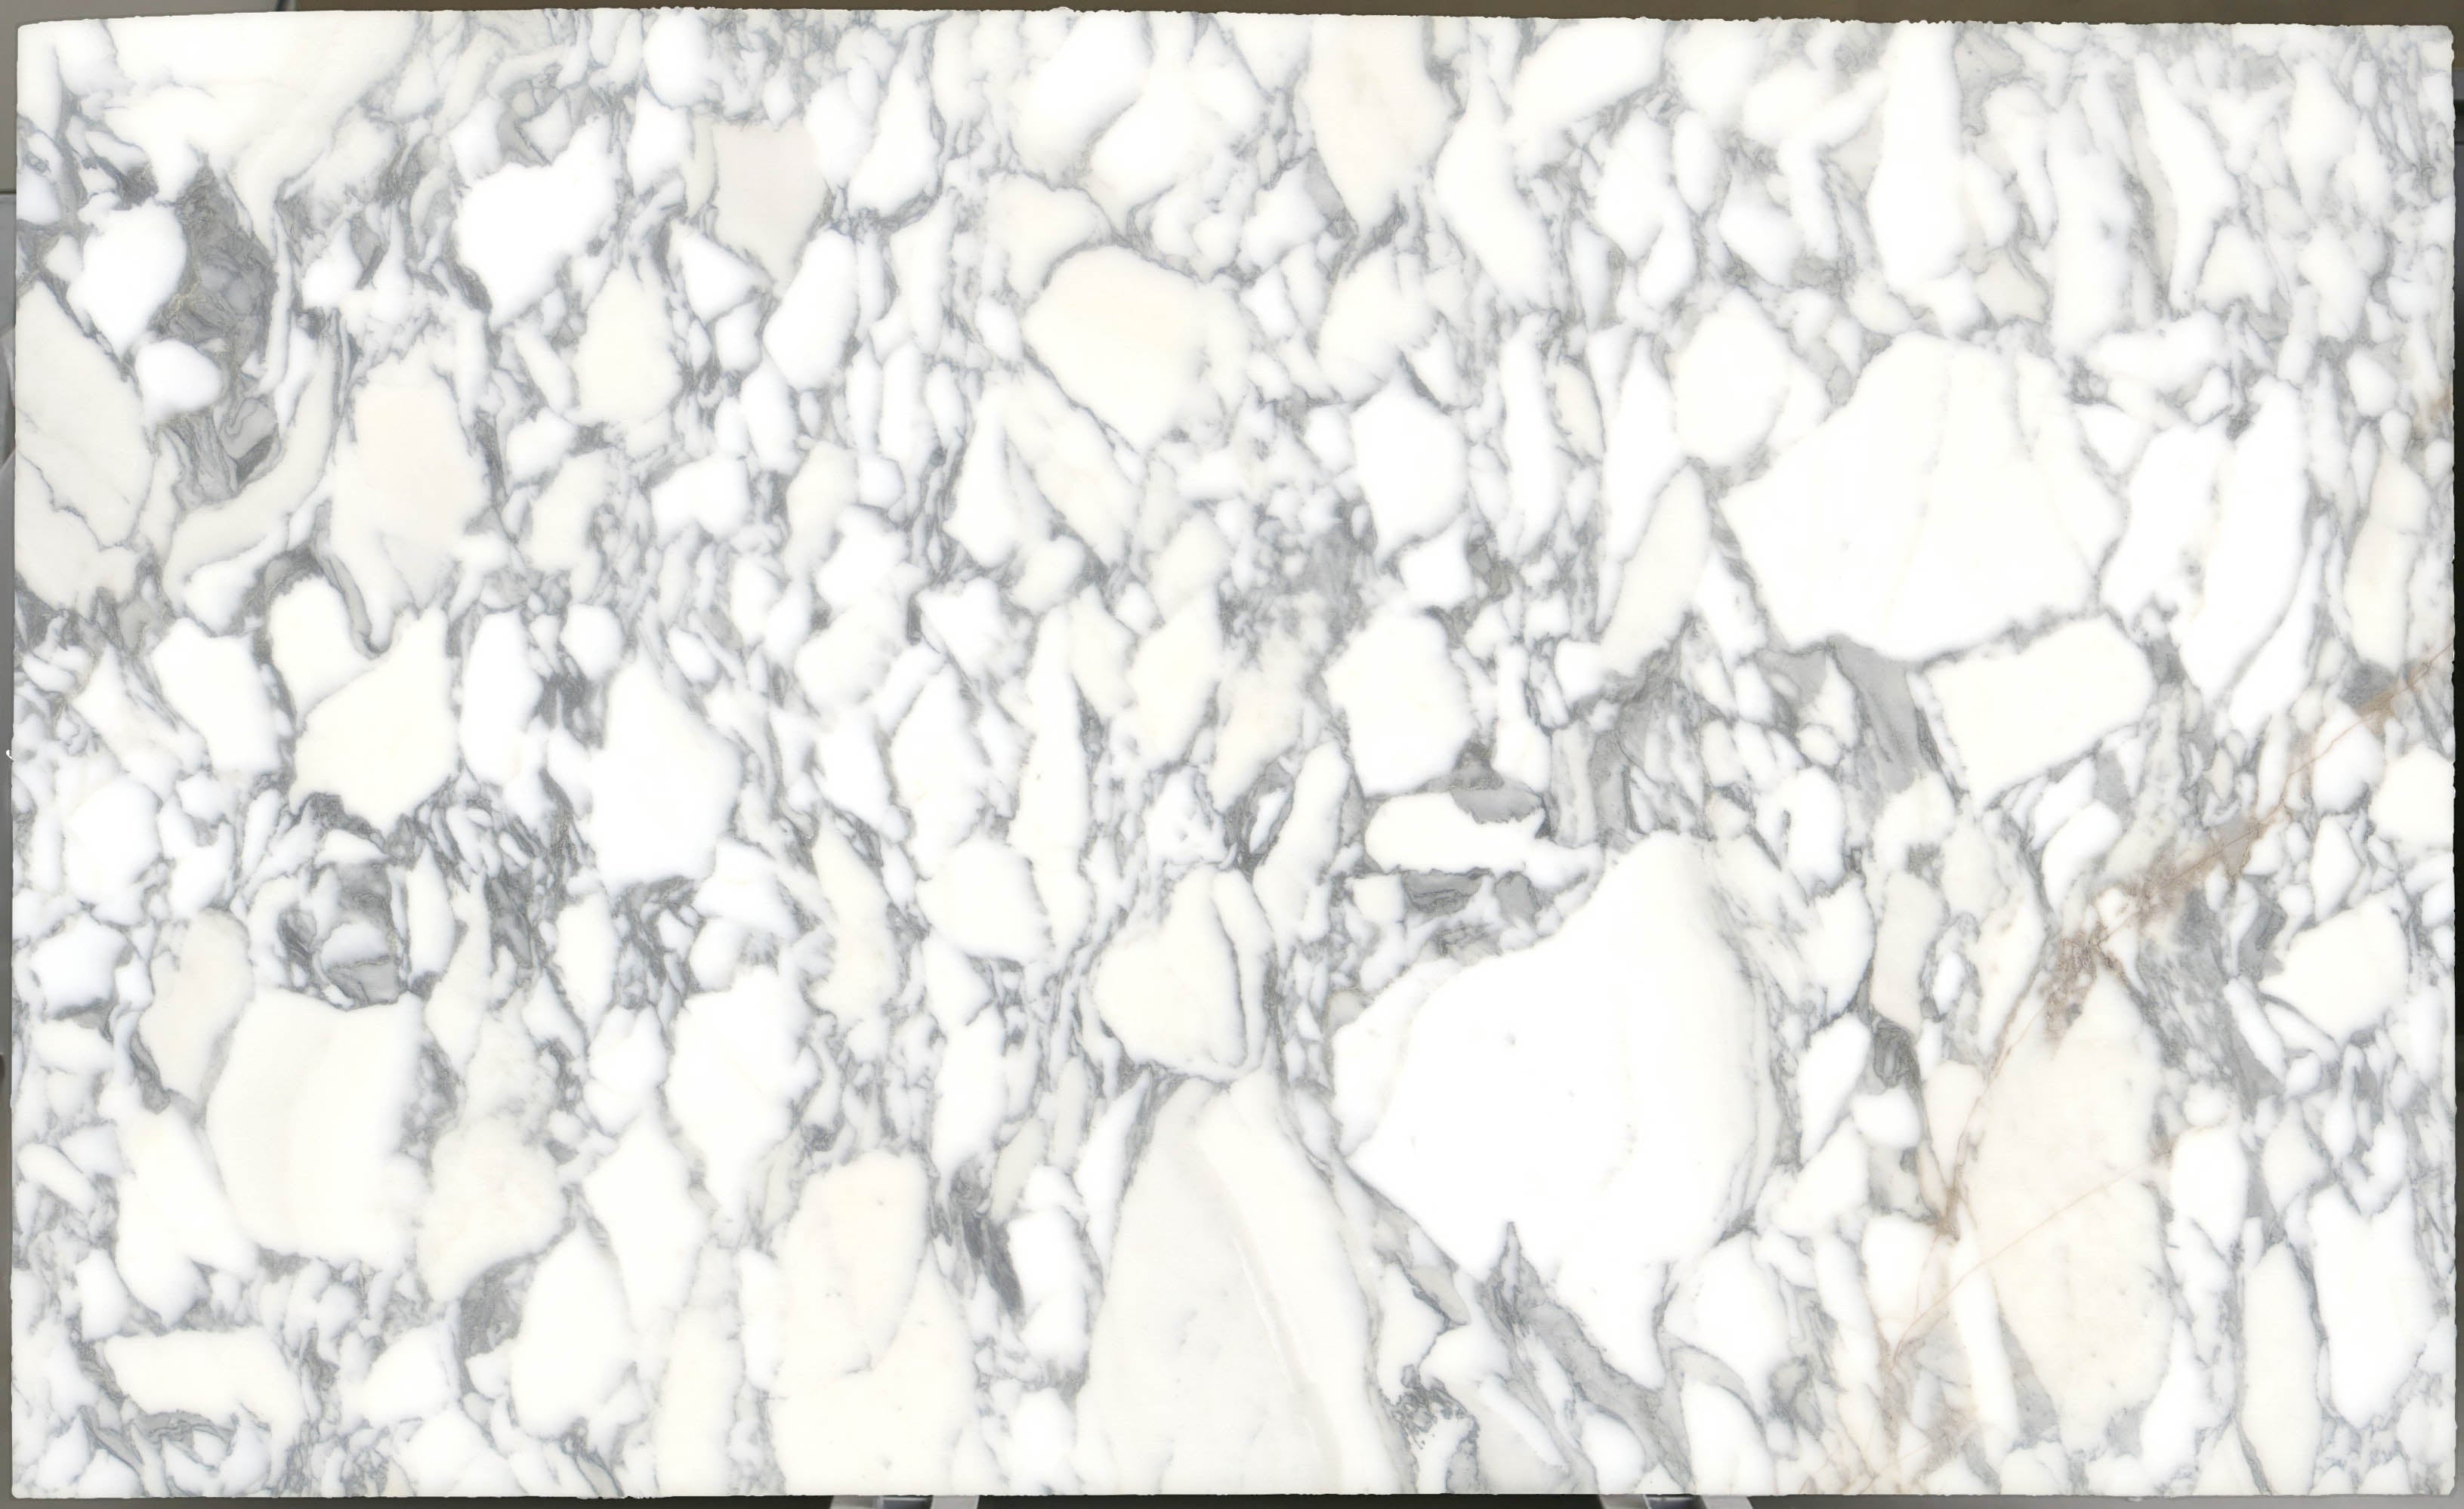  Arabescato Corchia Marble Slab 3/4 - 4026#31 -  VS 74x123 